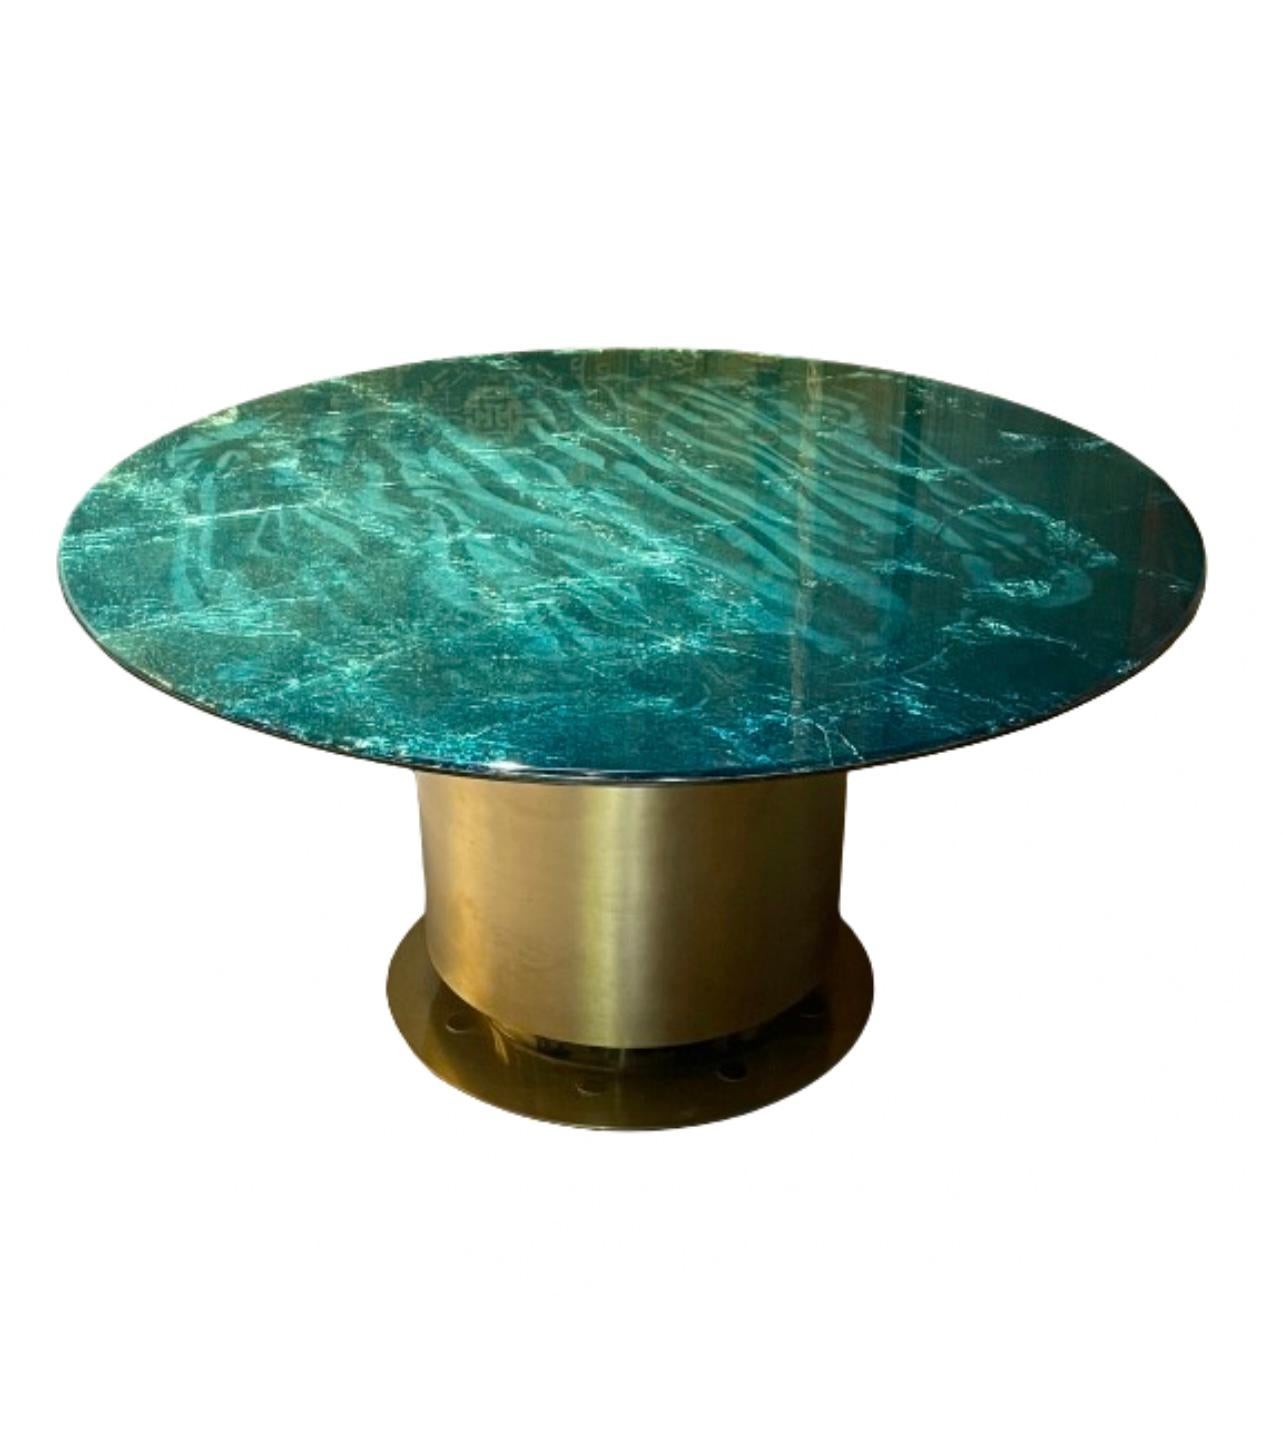 La table centrale Getsumei Editions de la gamme de luxe de RIZO est un chef-d'œuvre quotidien d'inspiration céleste. Le plateau de la table est un mélange tourbillonnant de bleus nuit profonds et de dorés éclatants, rappelant la lune et le soleil.